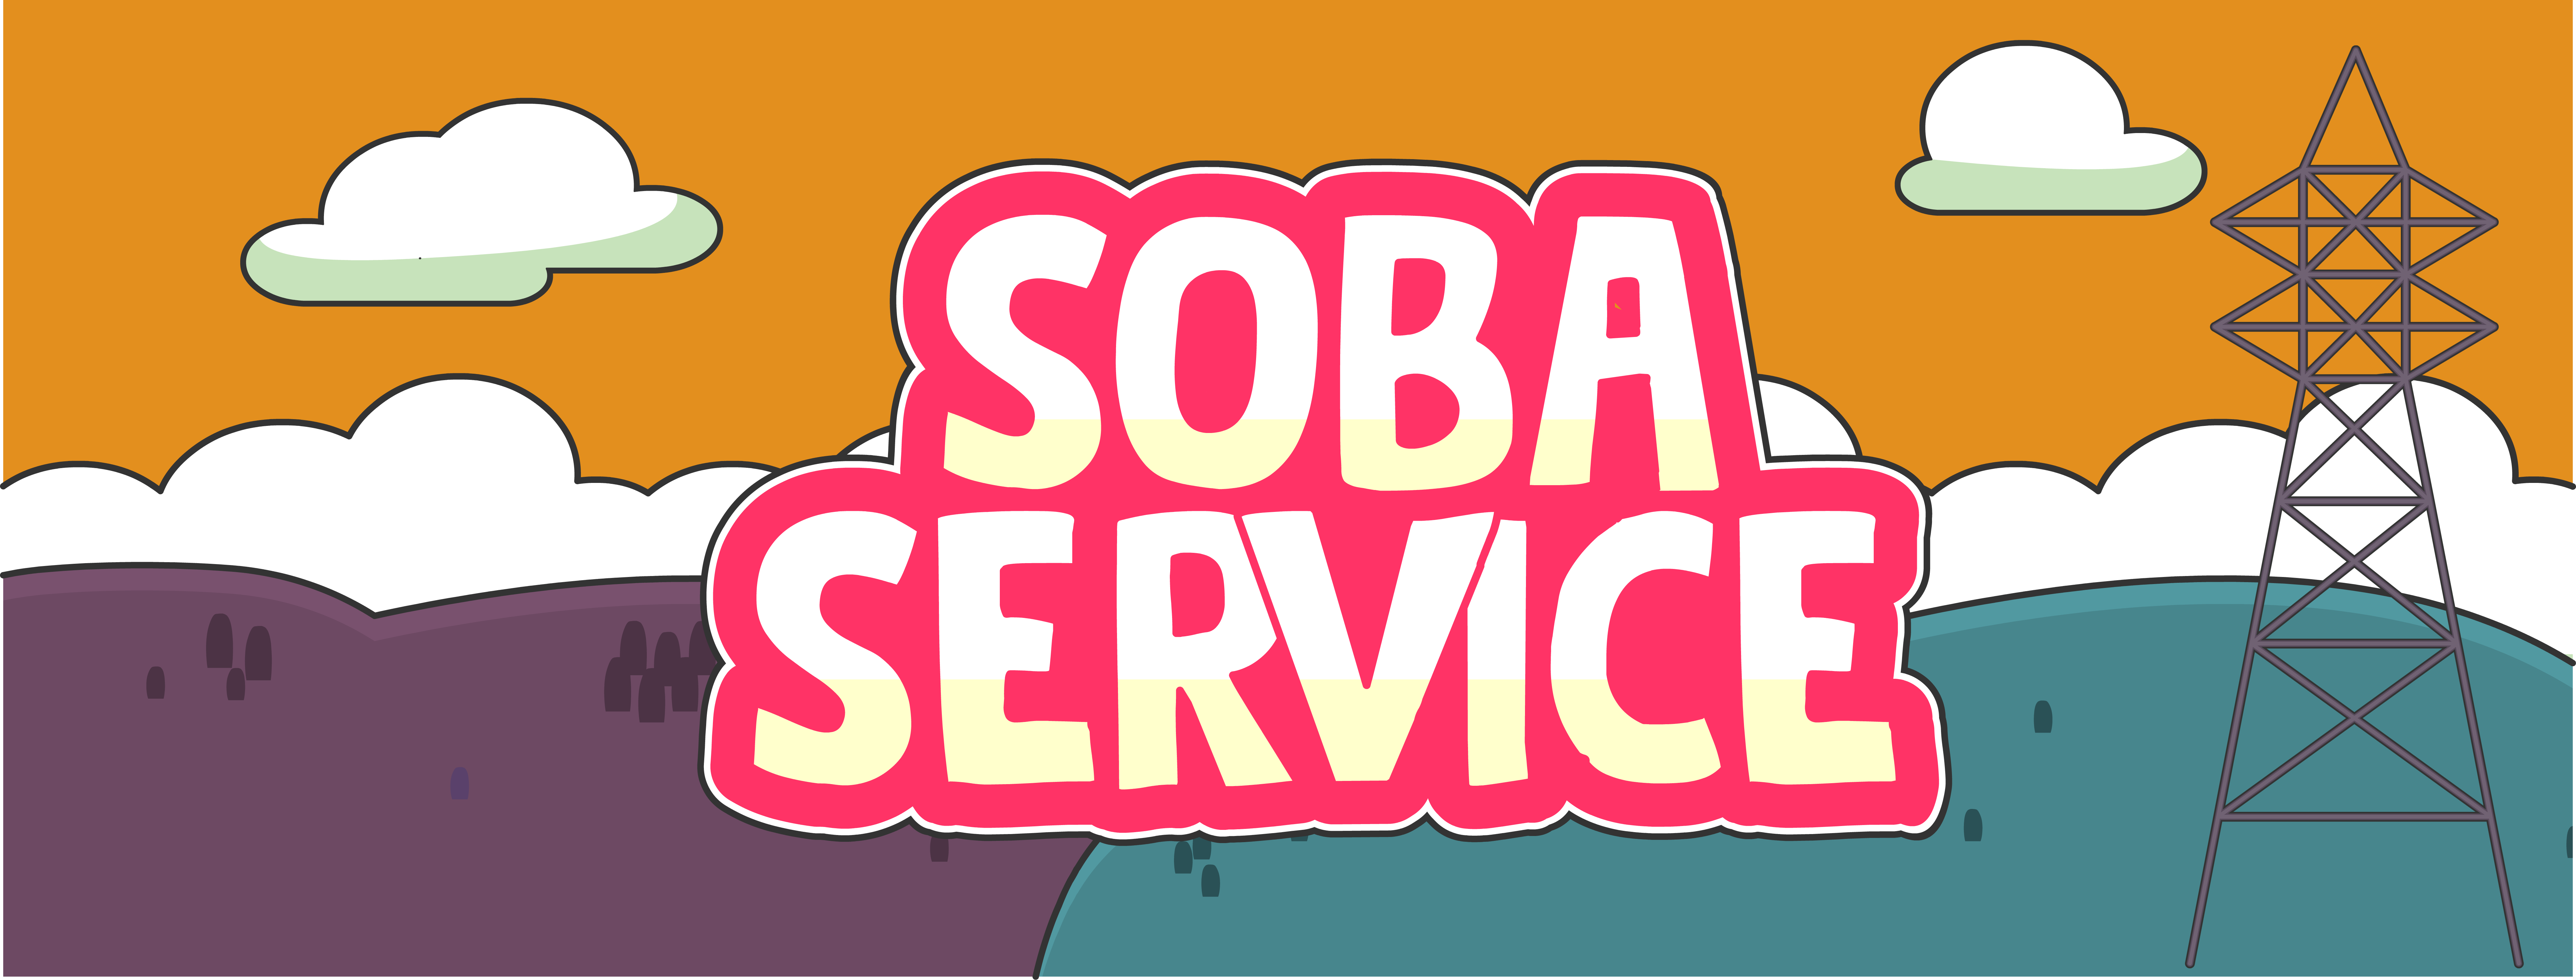 SOBA SERVICE